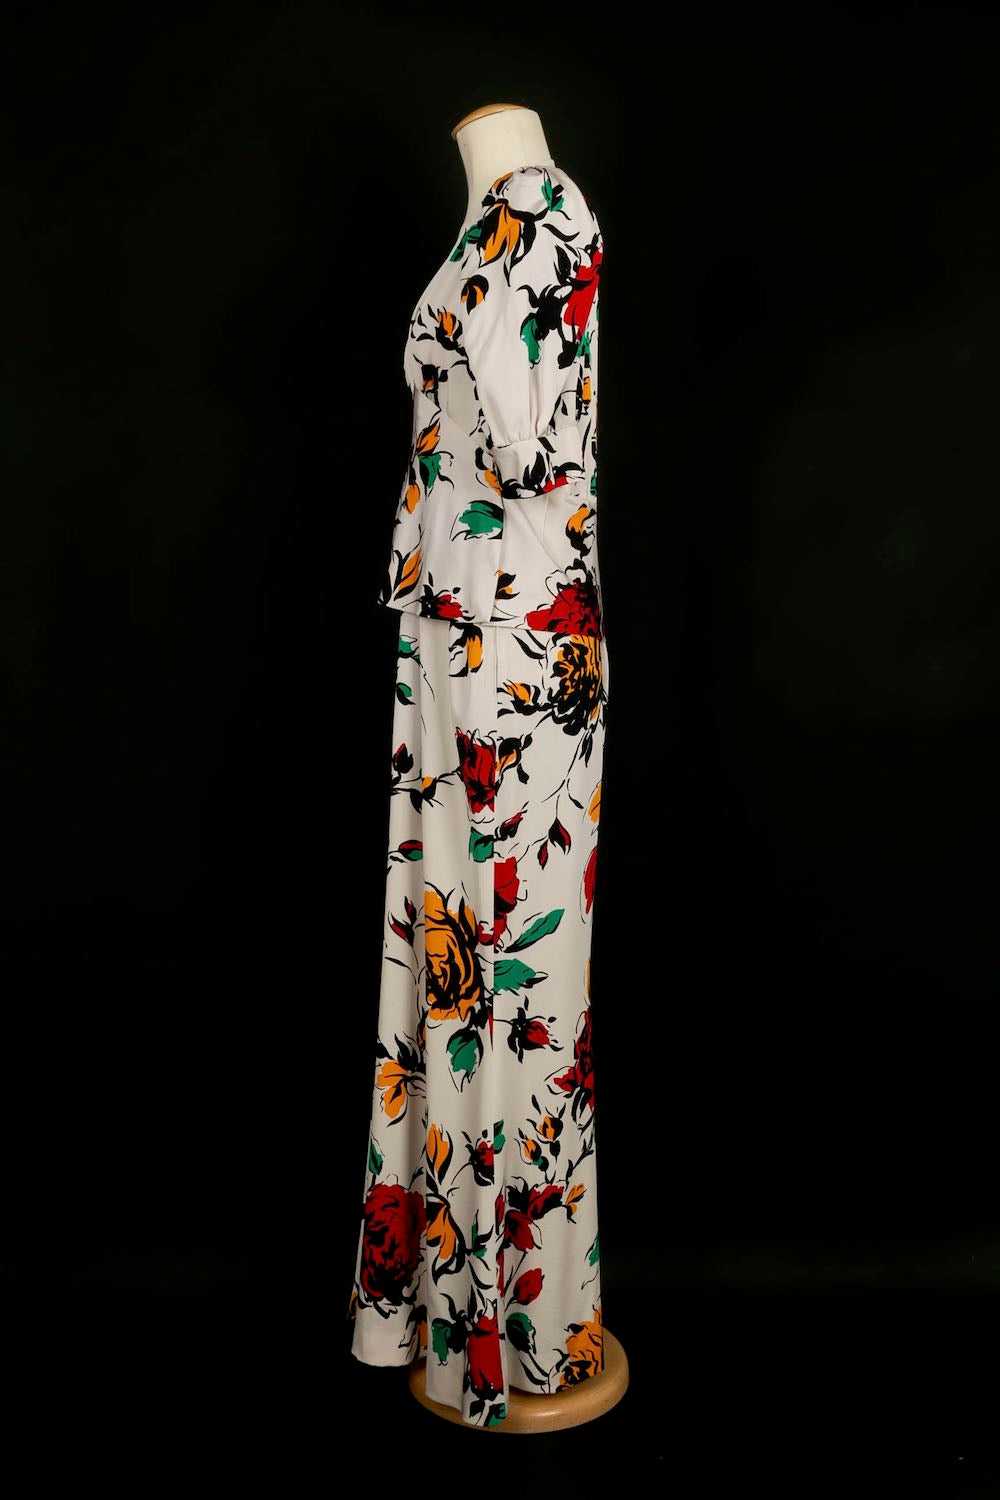 Yves Saint Laurent Haute Couture Dress - image 2